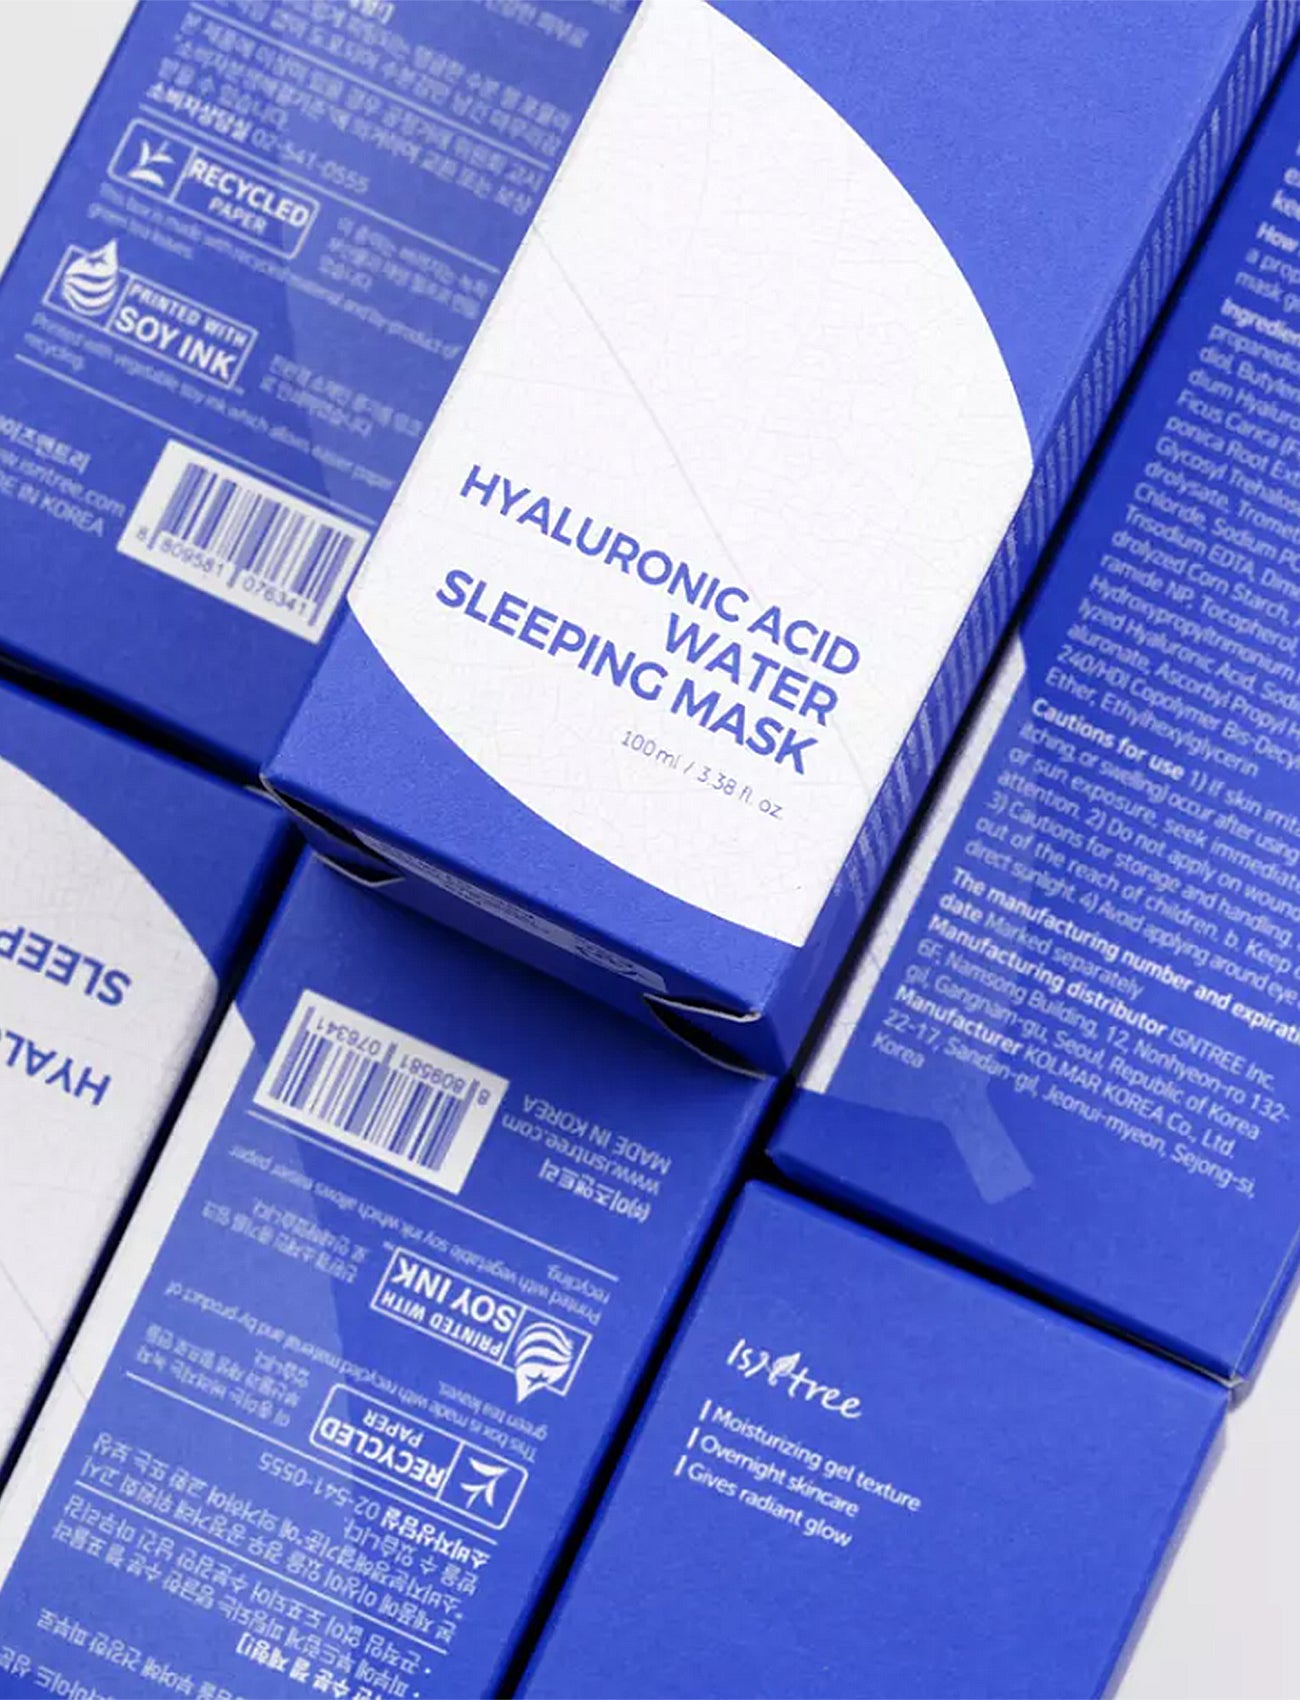 Hyaluronic Acid Water Sleeping Mask